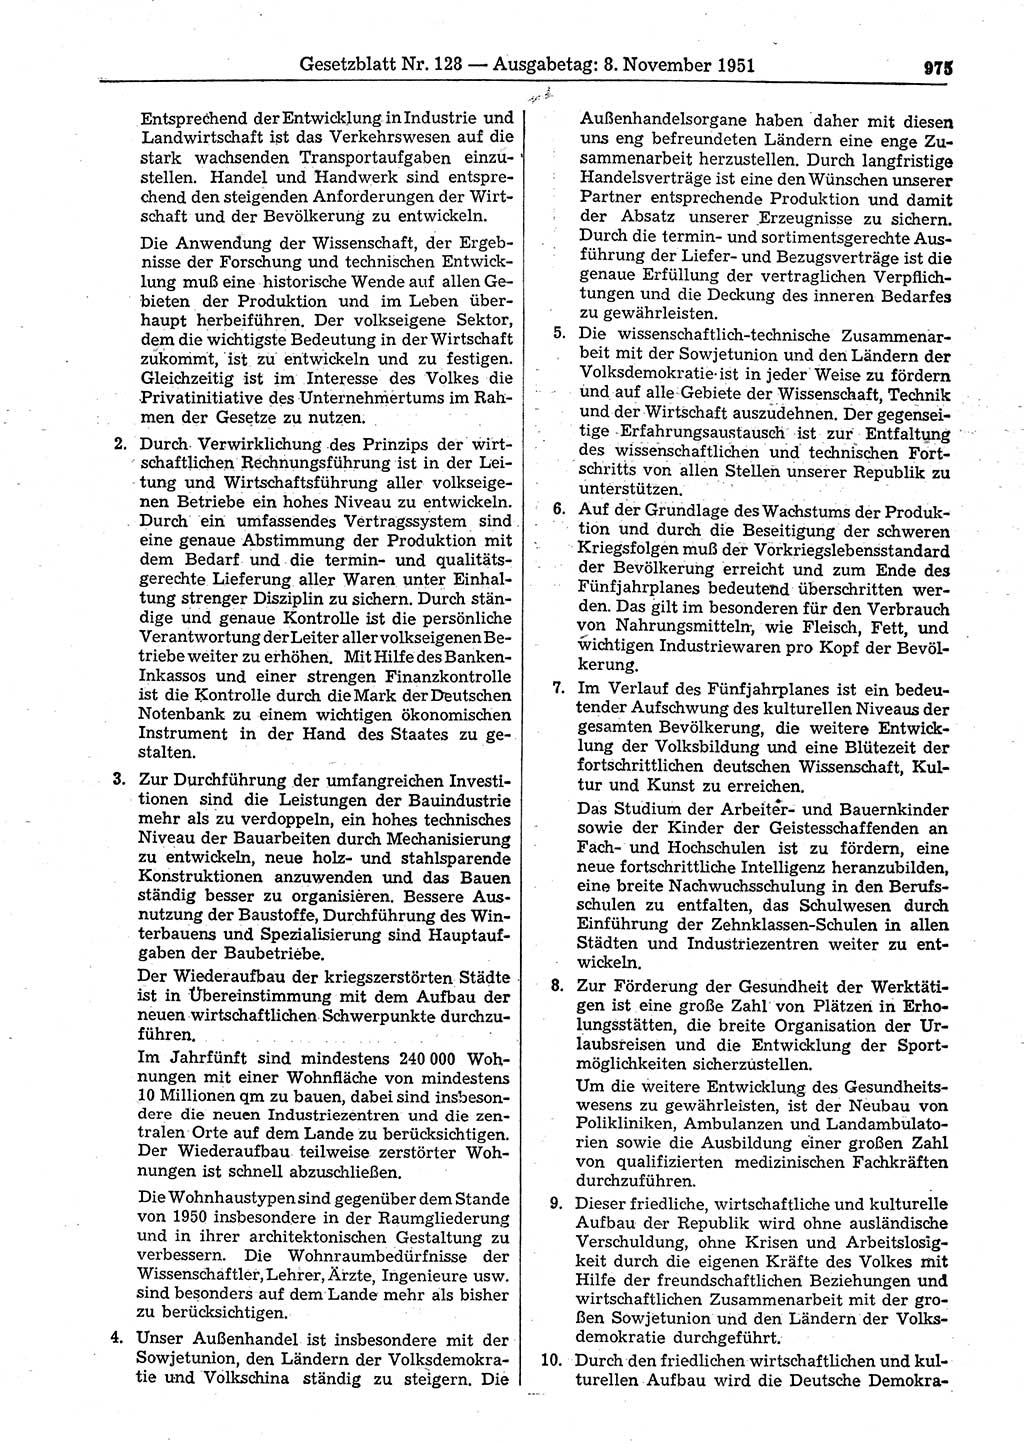 Gesetzblatt (GBl.) der Deutschen Demokratischen Republik (DDR) 1951, Seite 975 (GBl. DDR 1951, S. 975)